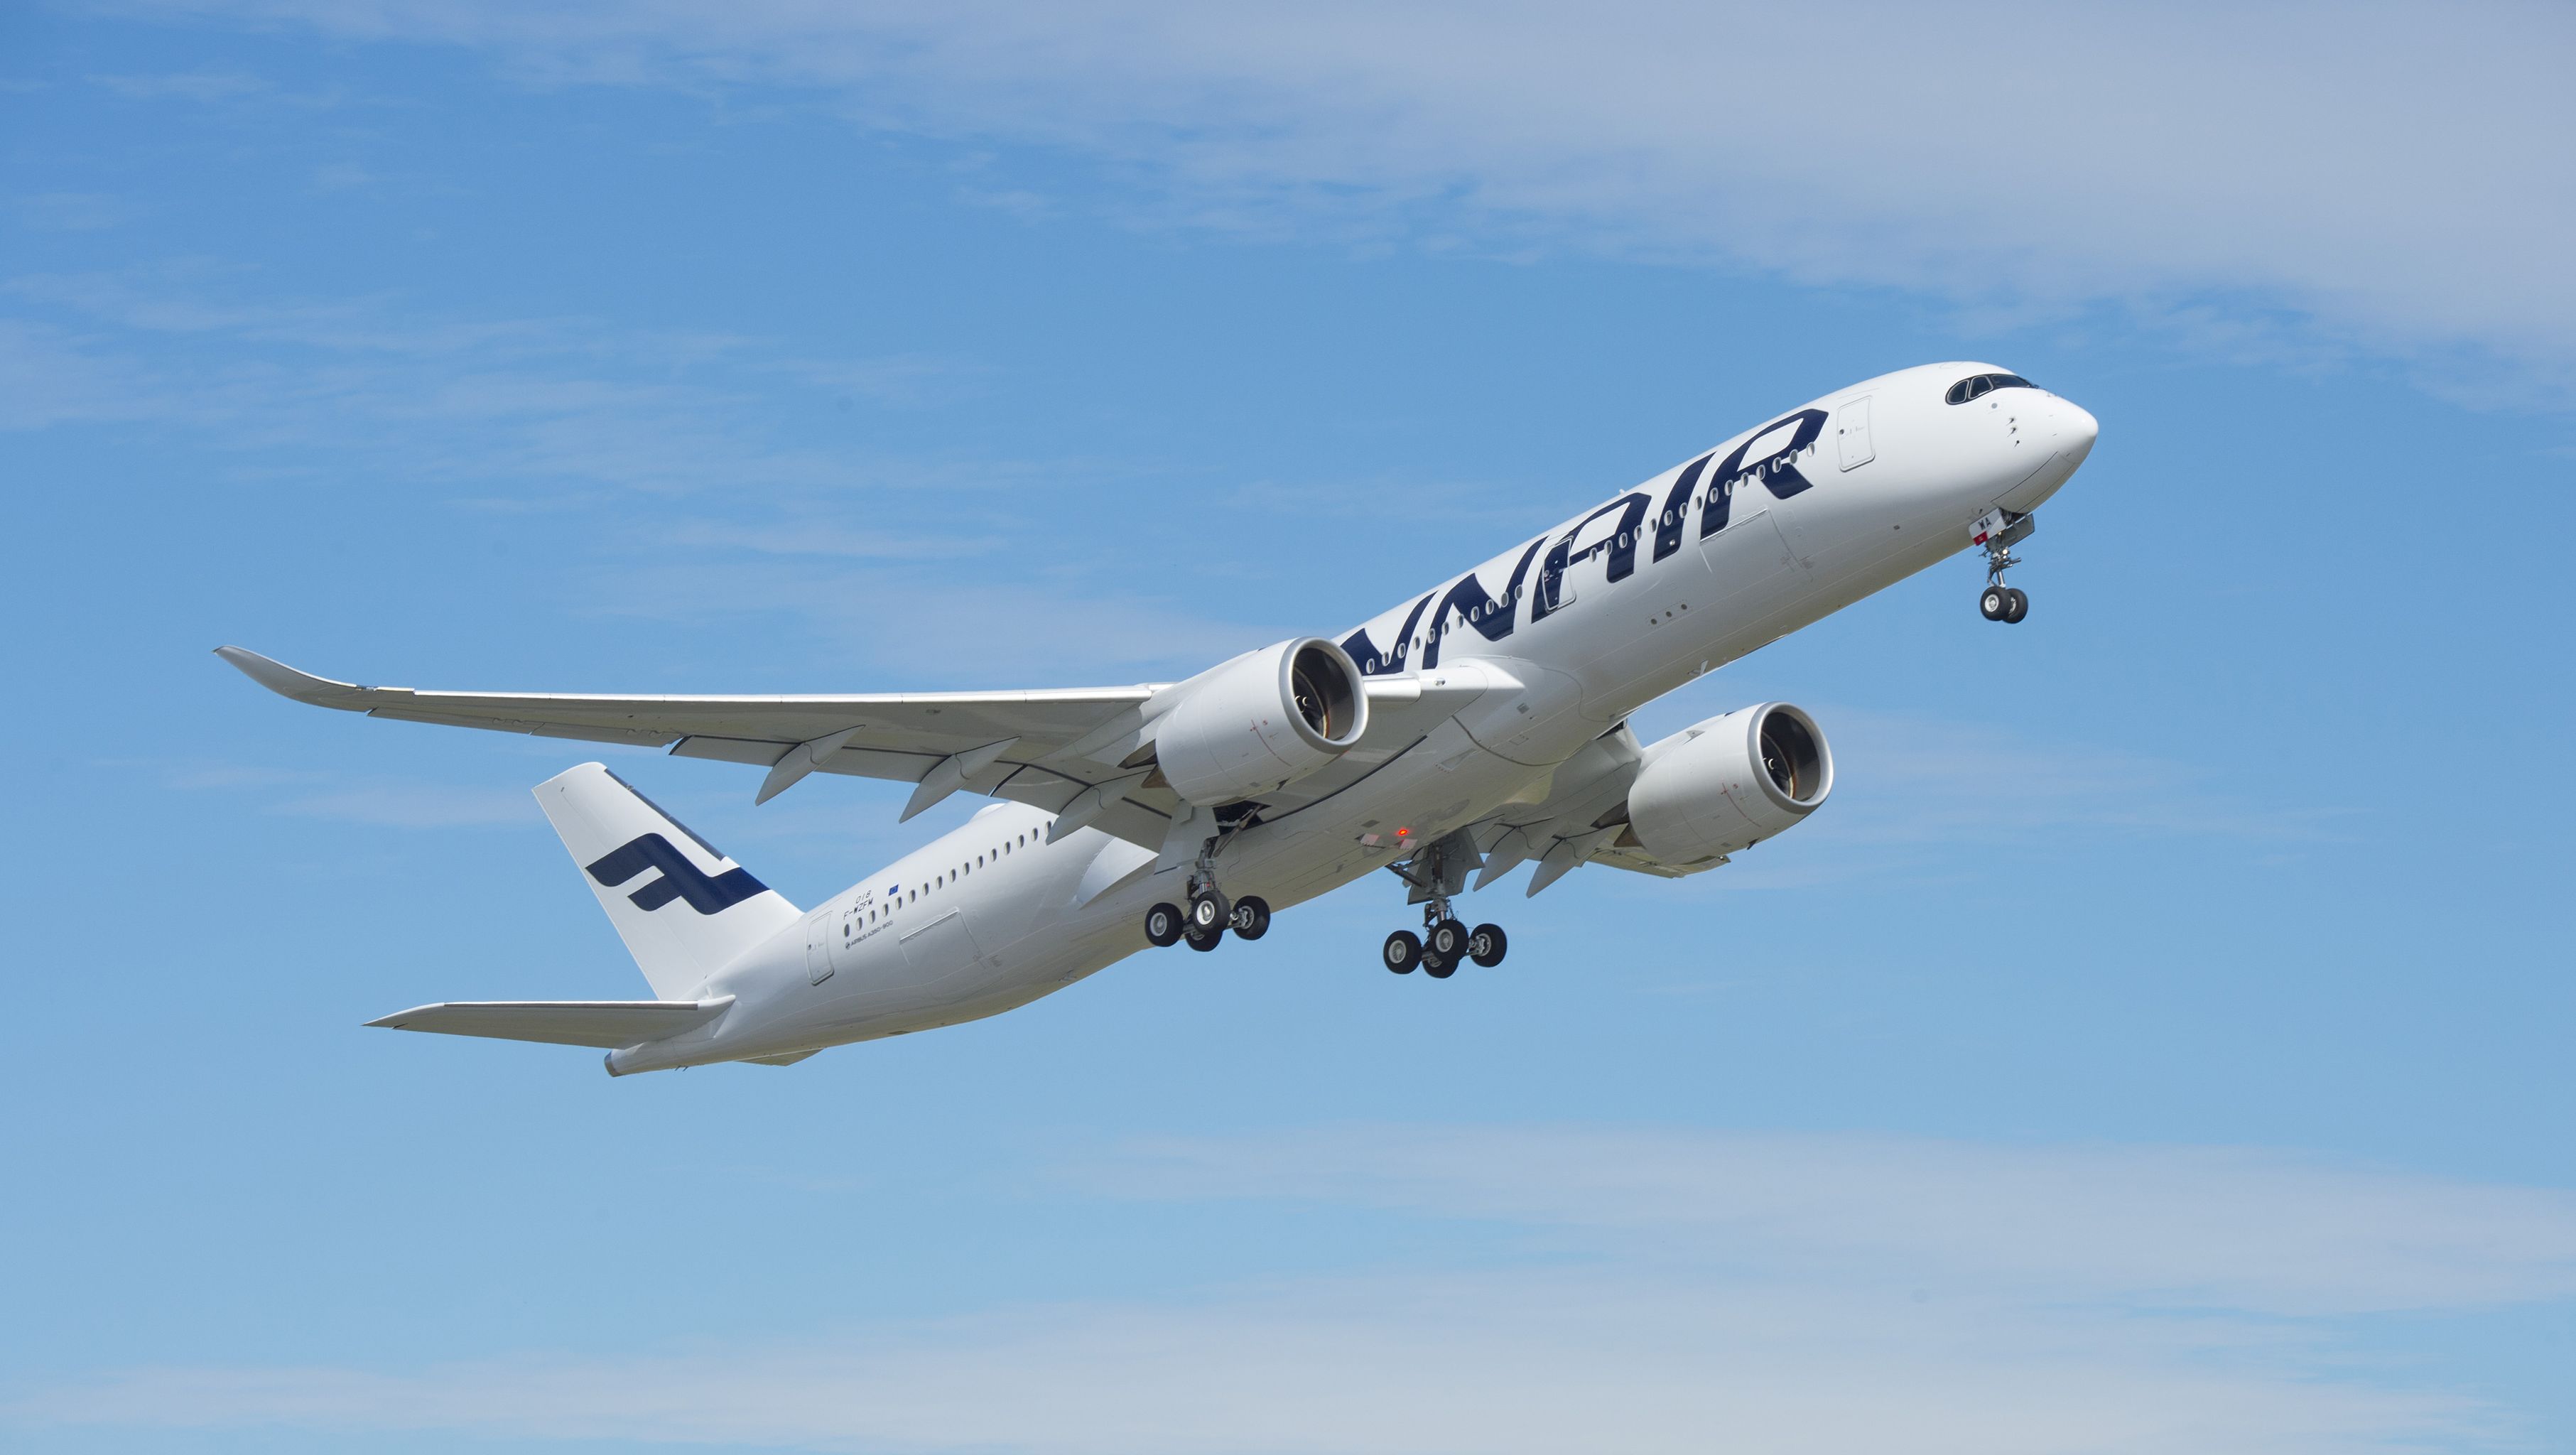 芬兰航空进一步增加运力 将于2019年冬开通往返大兴机场航班 - 环球旅讯(TravelDaily)